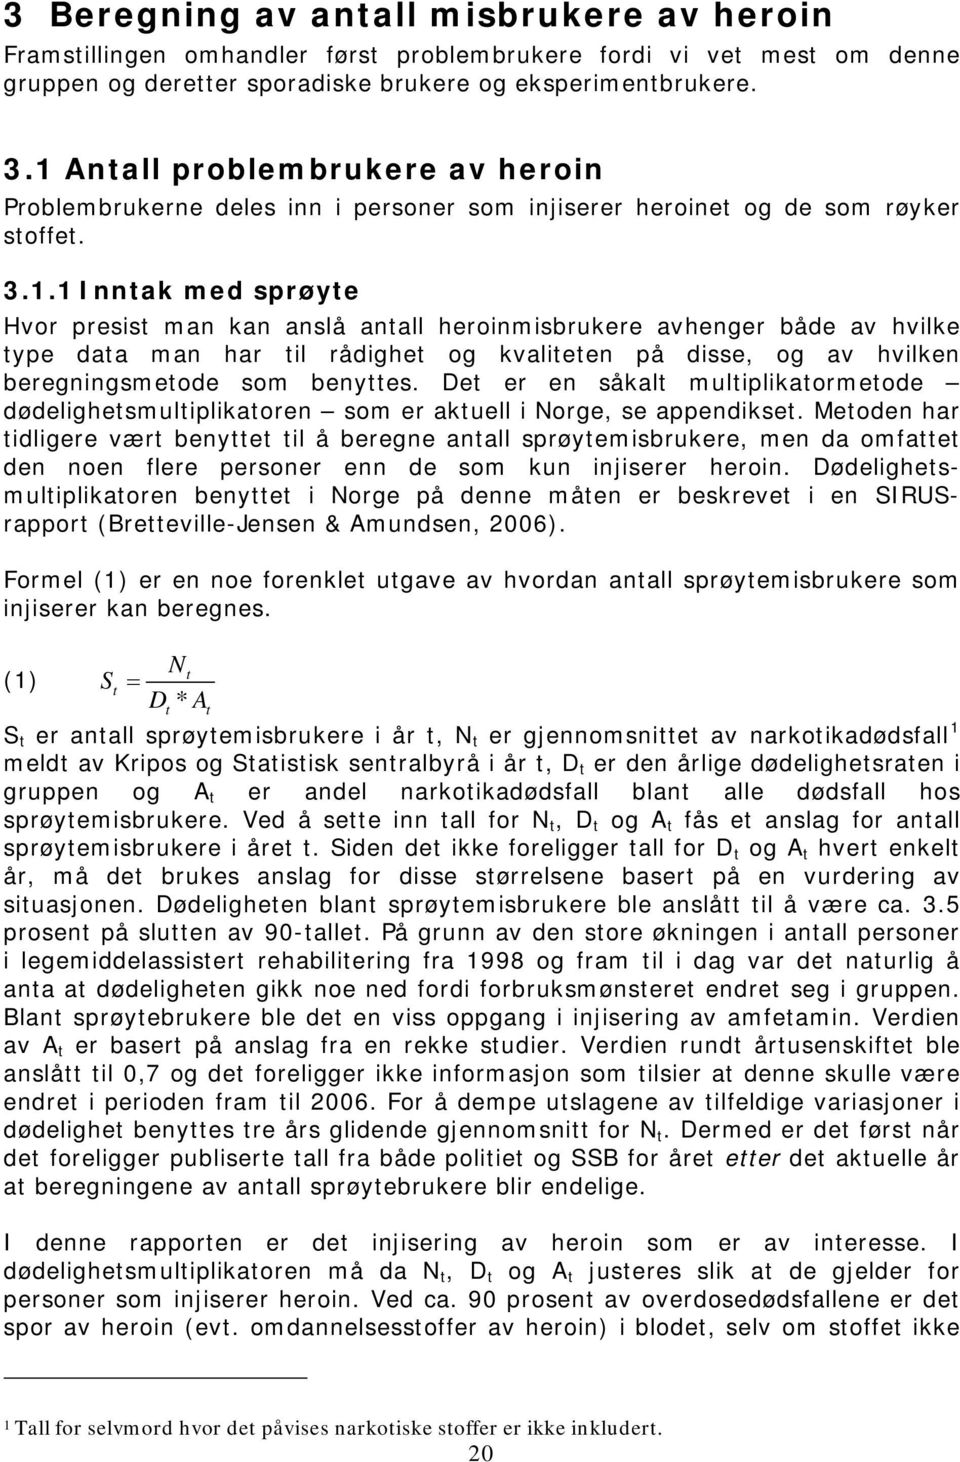 Det er en såkalt multiplikatormetode dødelighetsmultiplikatoren som er aktuell i Norge, se appendikset.